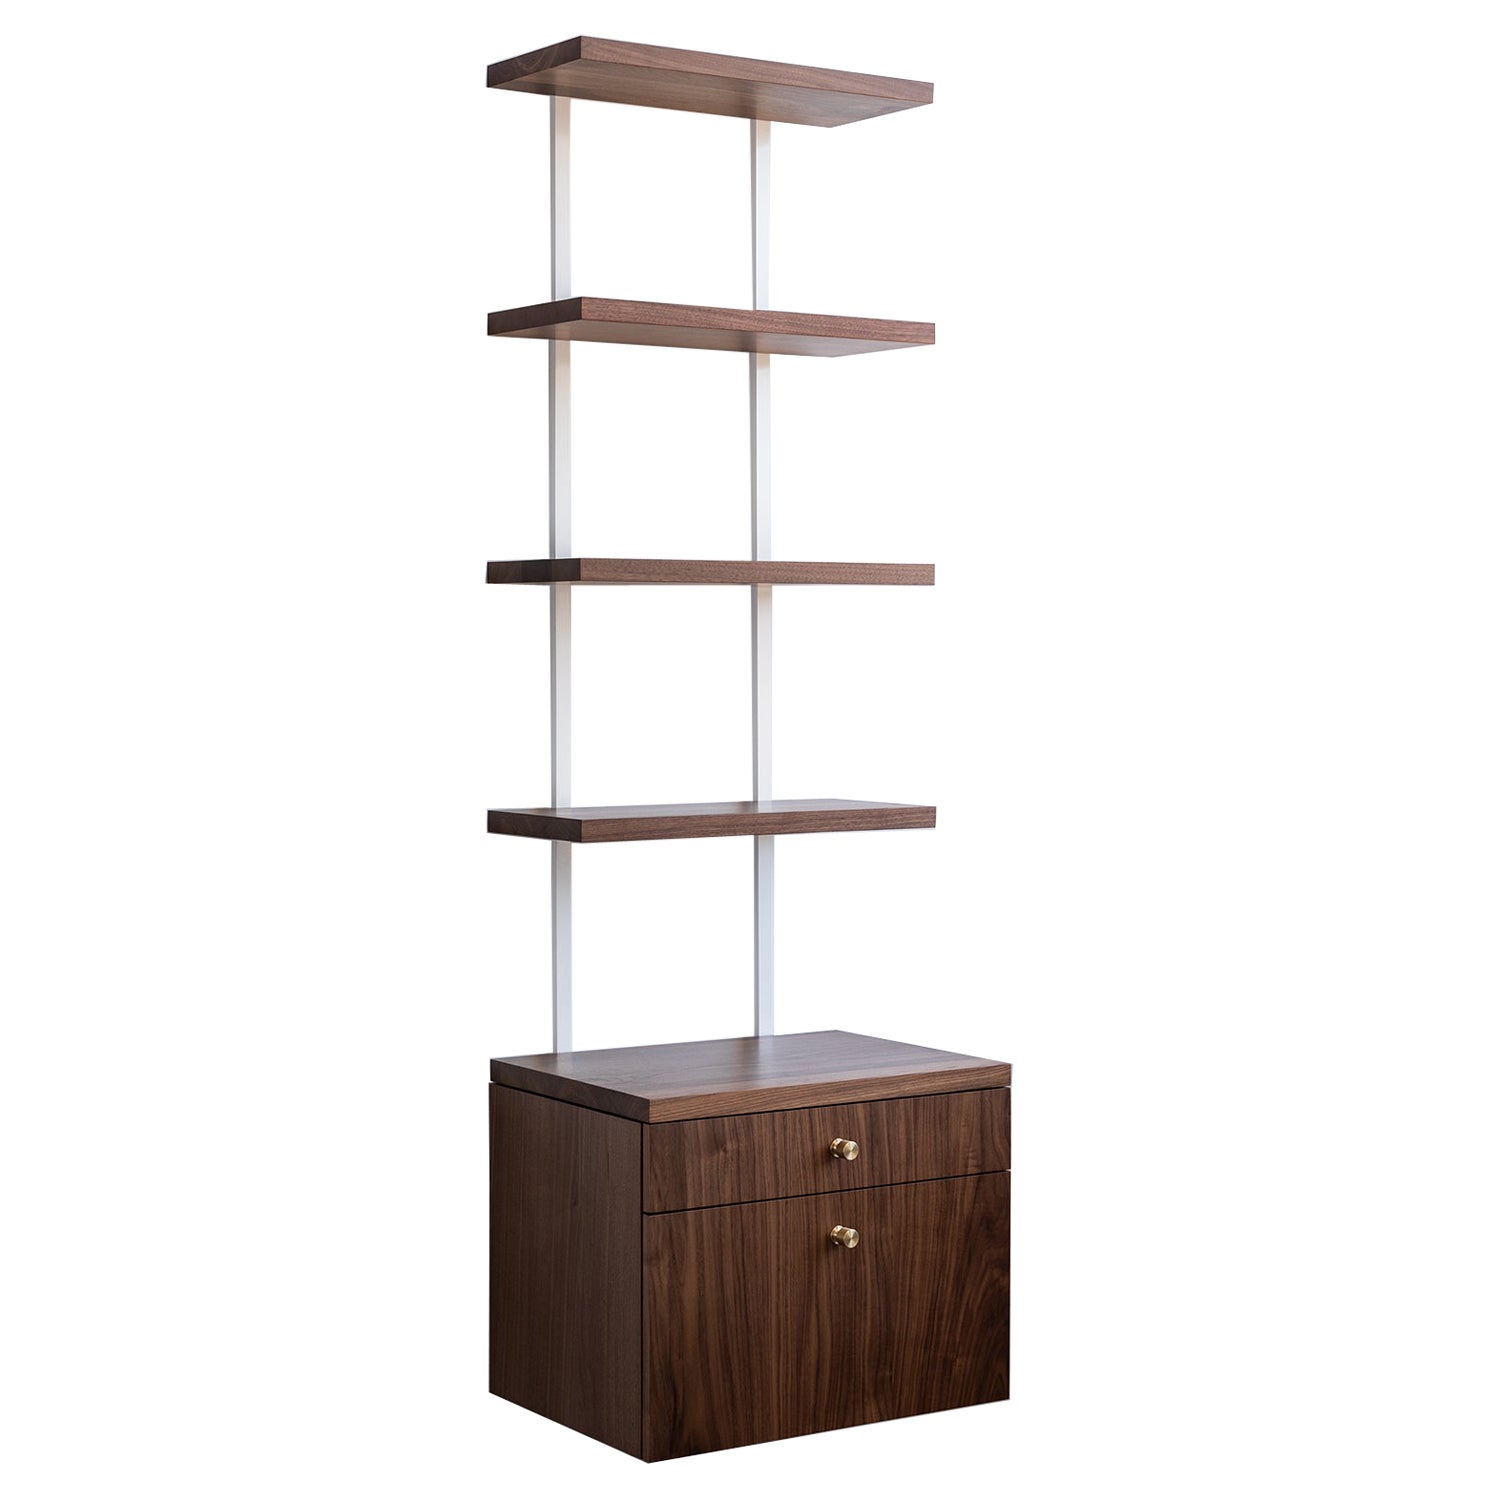 AS6 wall unit 24" wide shelves & drawer cabinet in solid walnut en vente